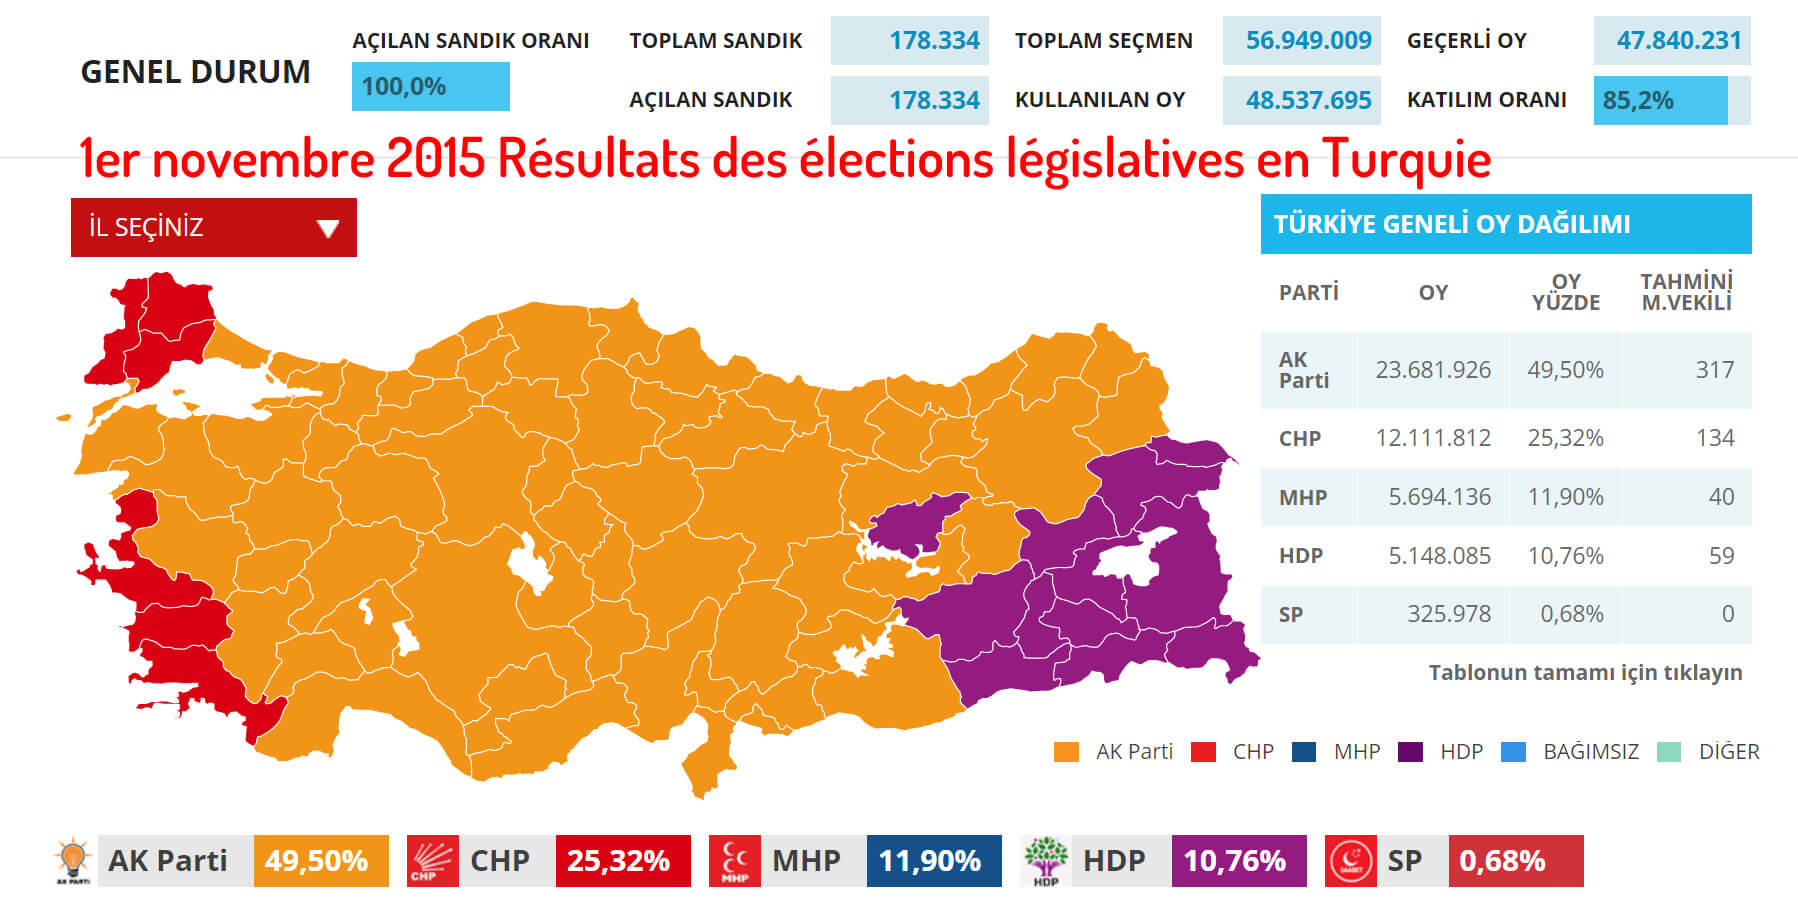 1er novembre 2015 Résultats des élections législatives en Turquie